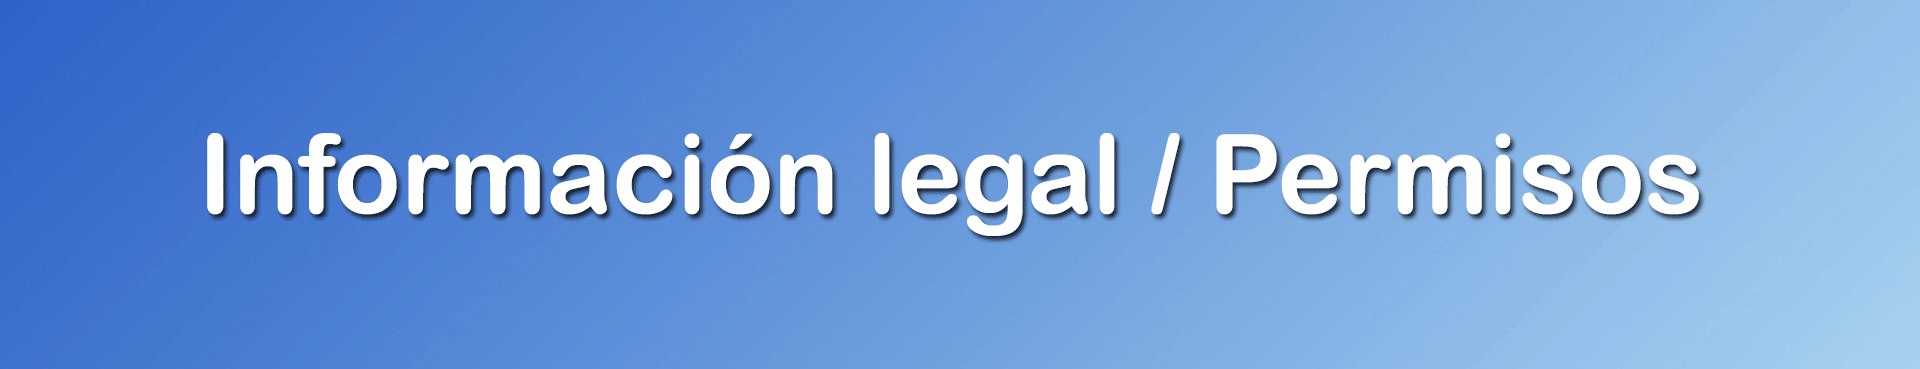 información legal y permisos